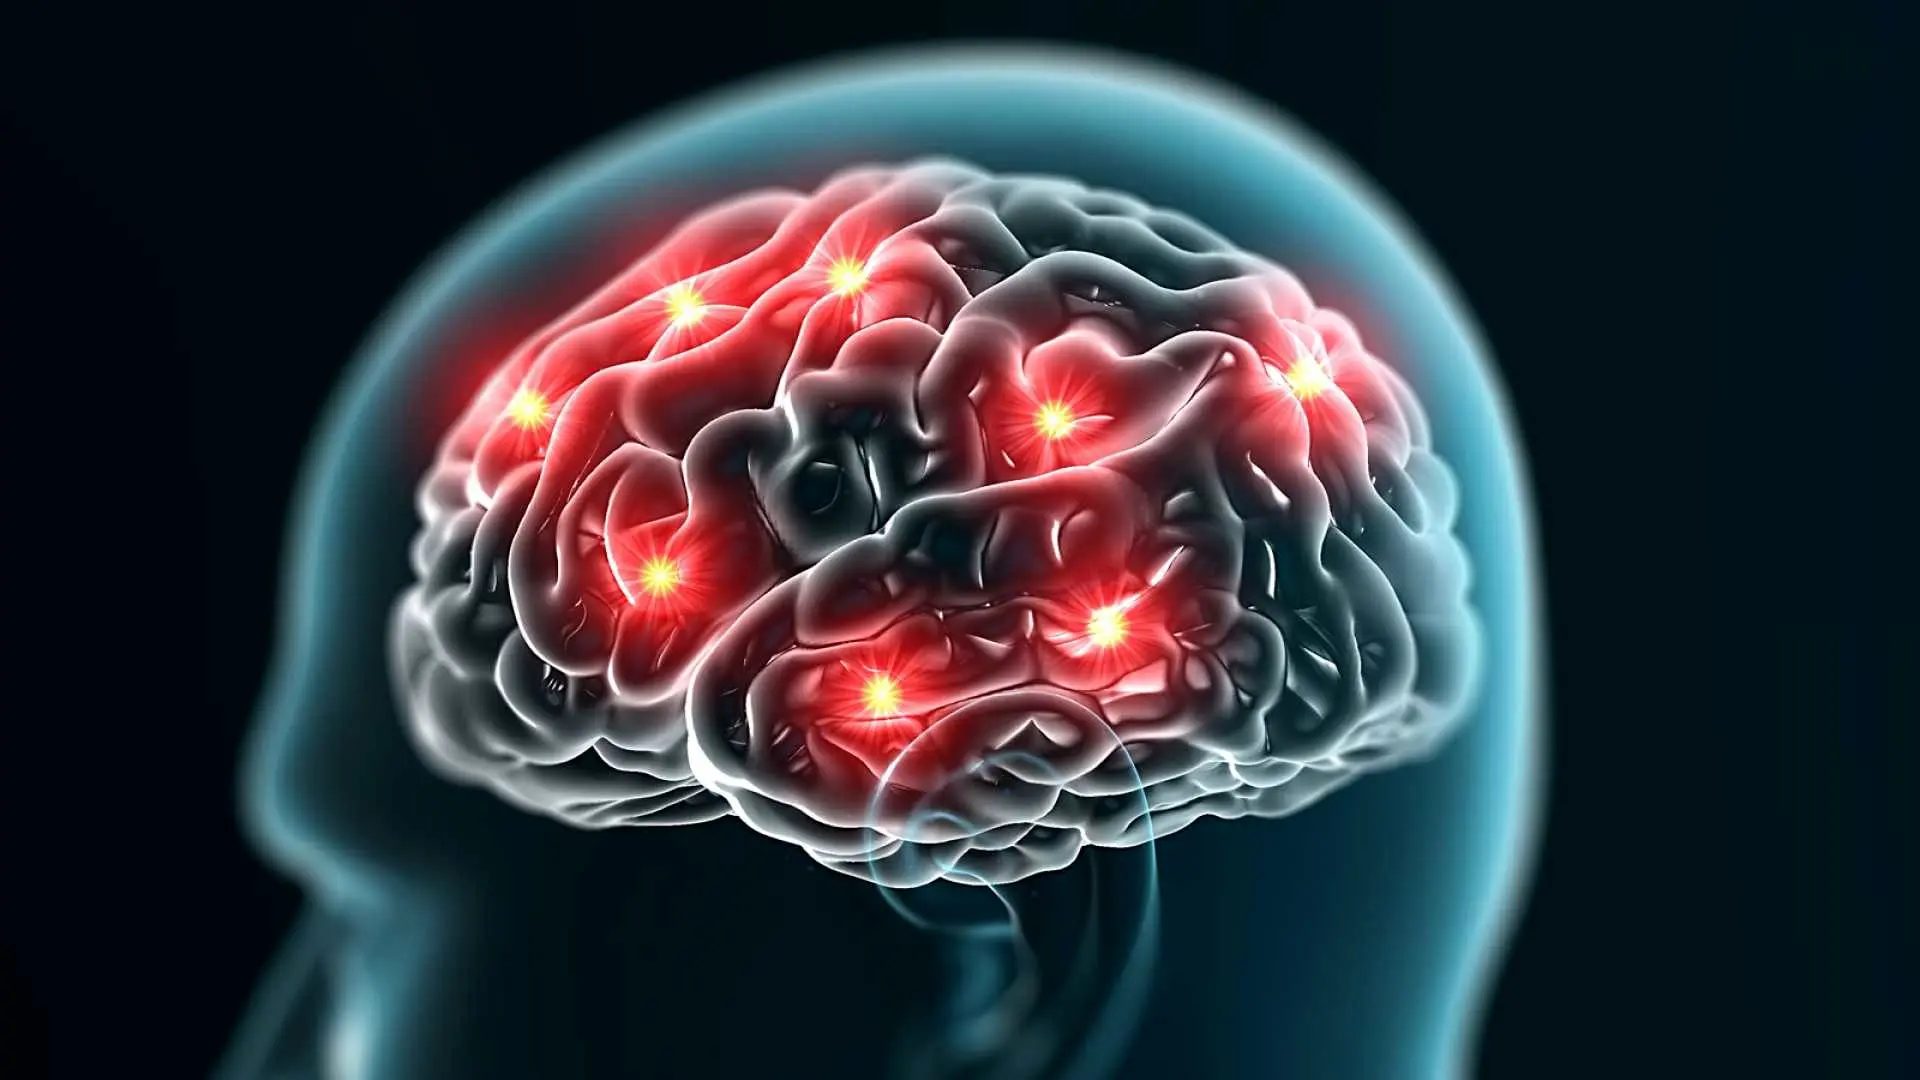 شناسایی فعالیت های رازآلود قبل از مرگ، در مغز بیماران مرگ مغزی